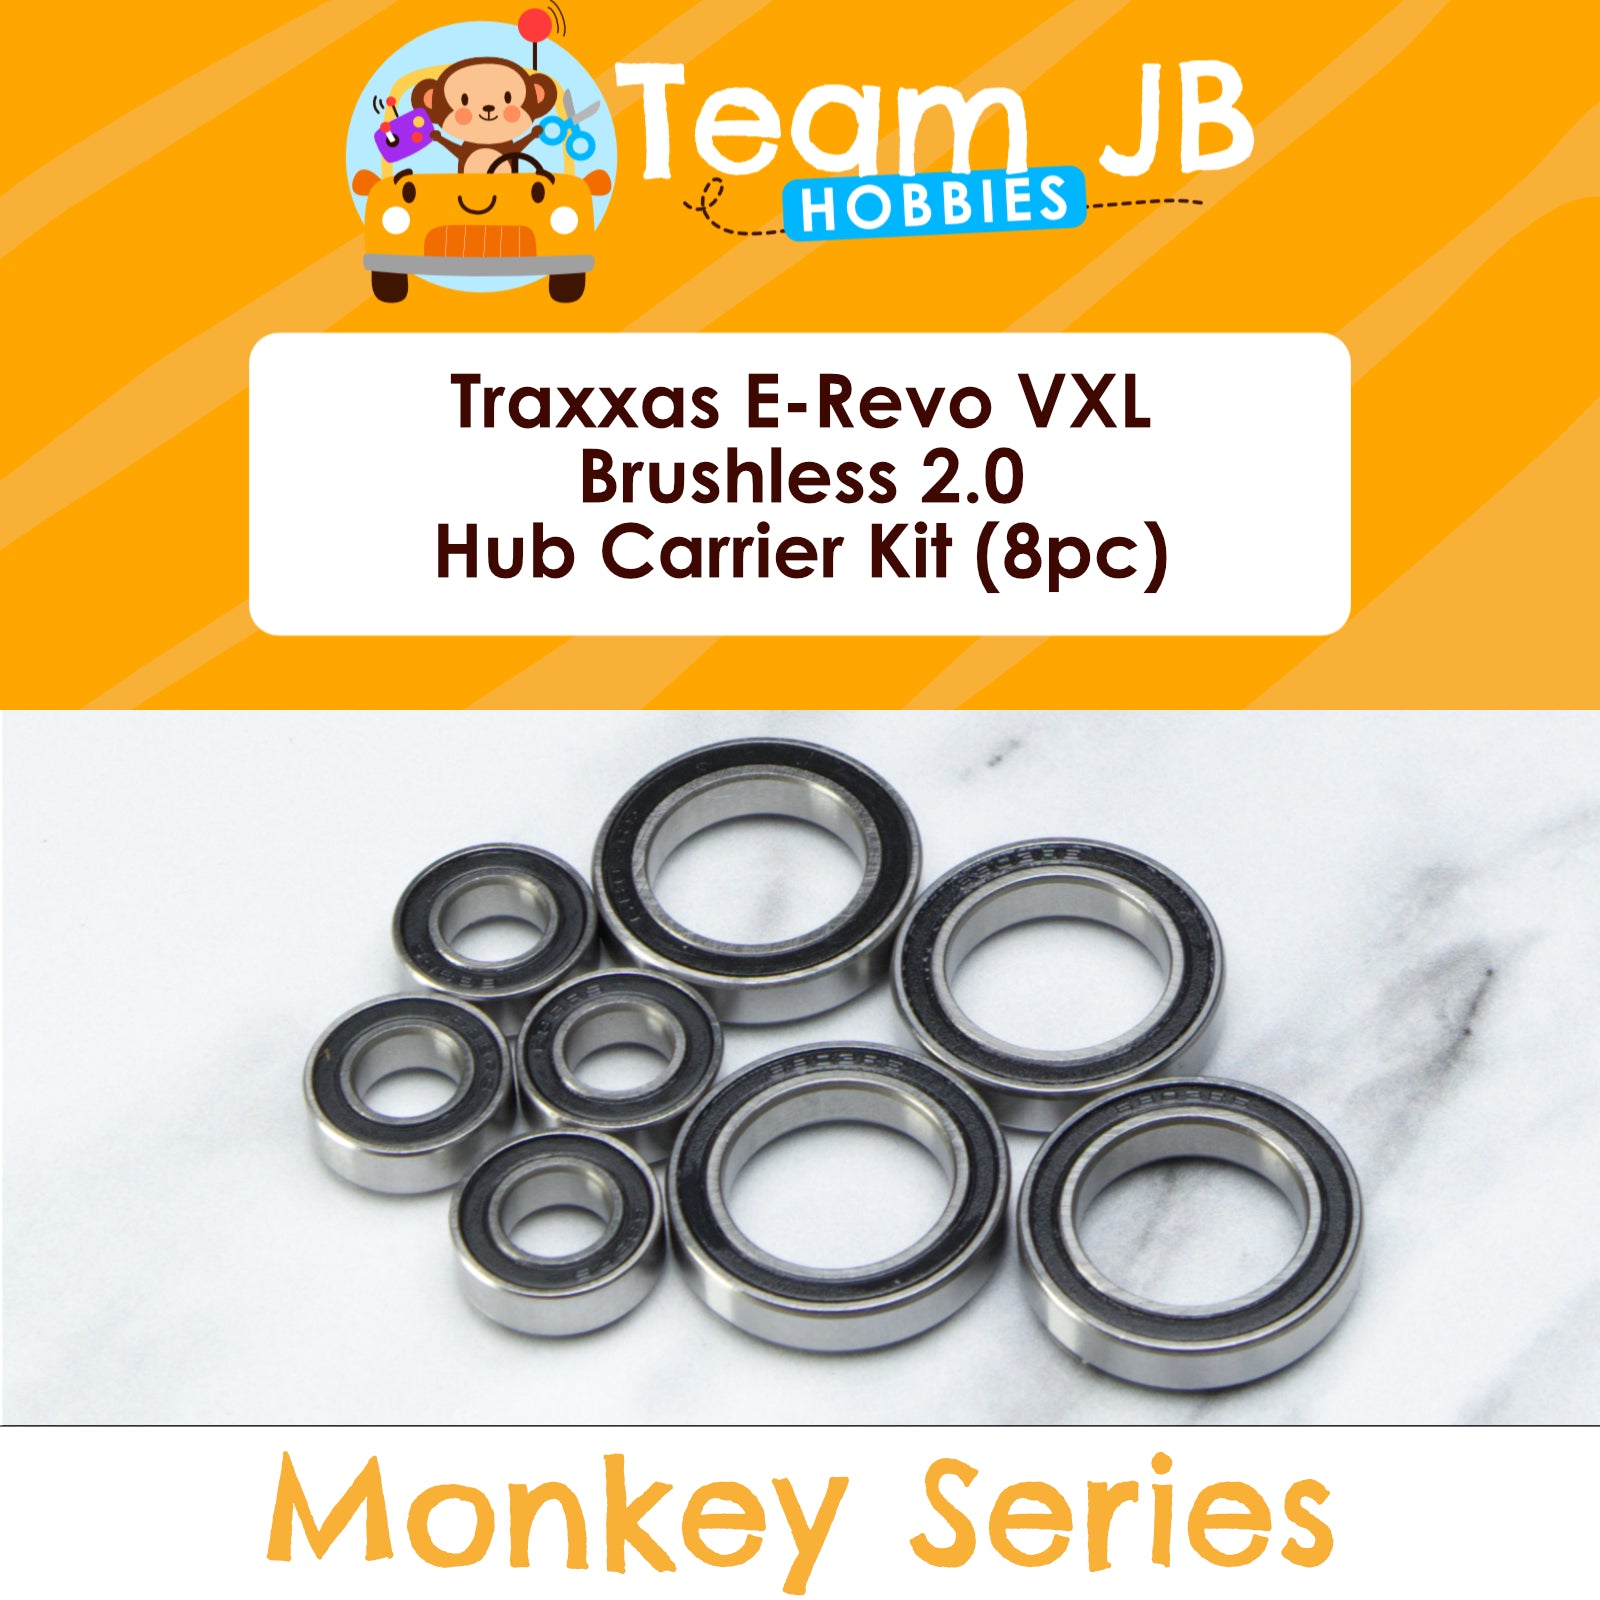 Traxxas E-Revo VXL Brushless 2.0 - Sealed Hub Carrier Bearing Kit